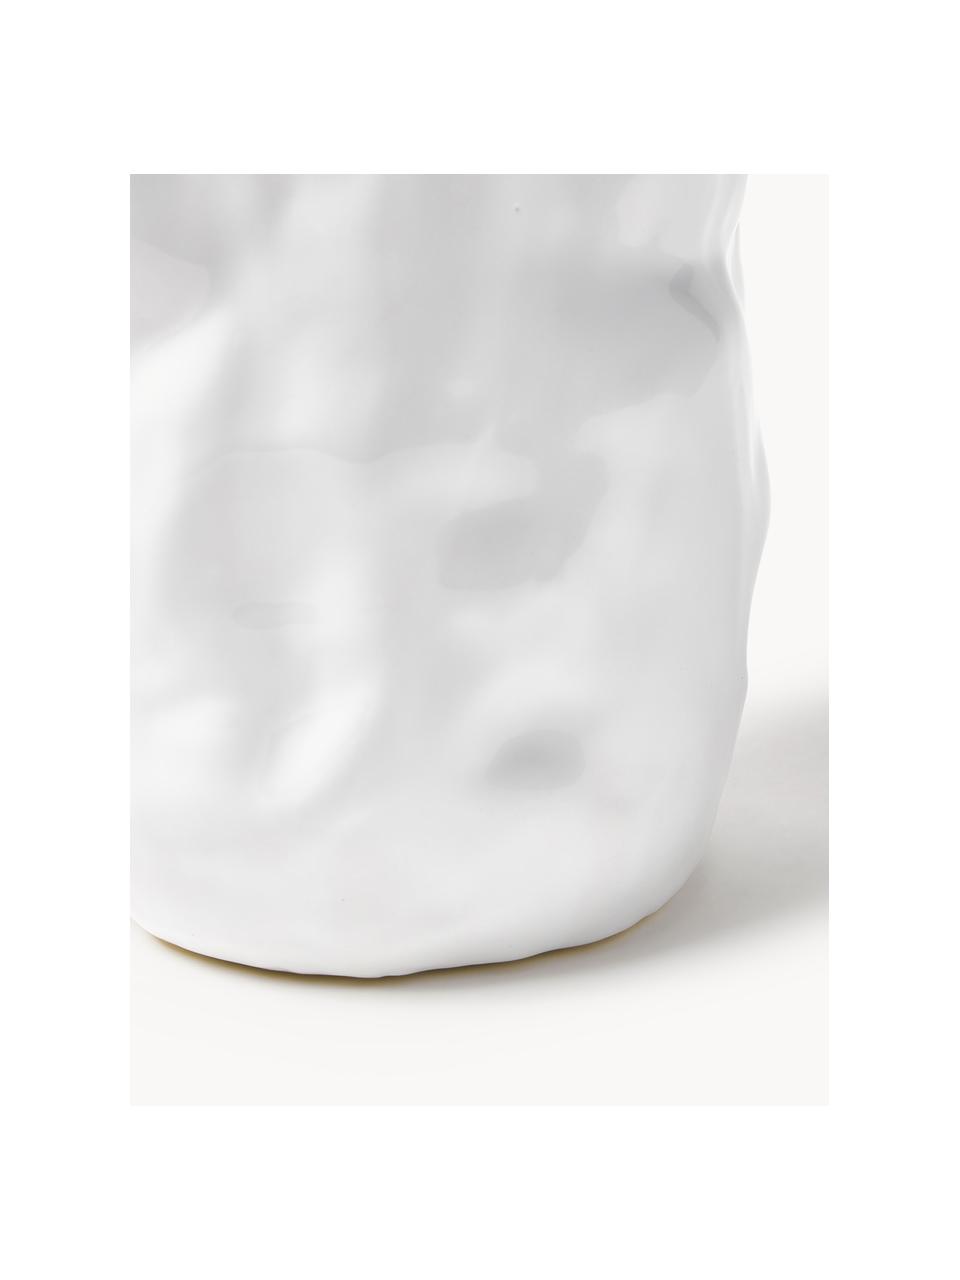 Wazon Dimple, Ceramika szkliwiona, Biały, odcienie złotego, Ø 20 x 33 cm